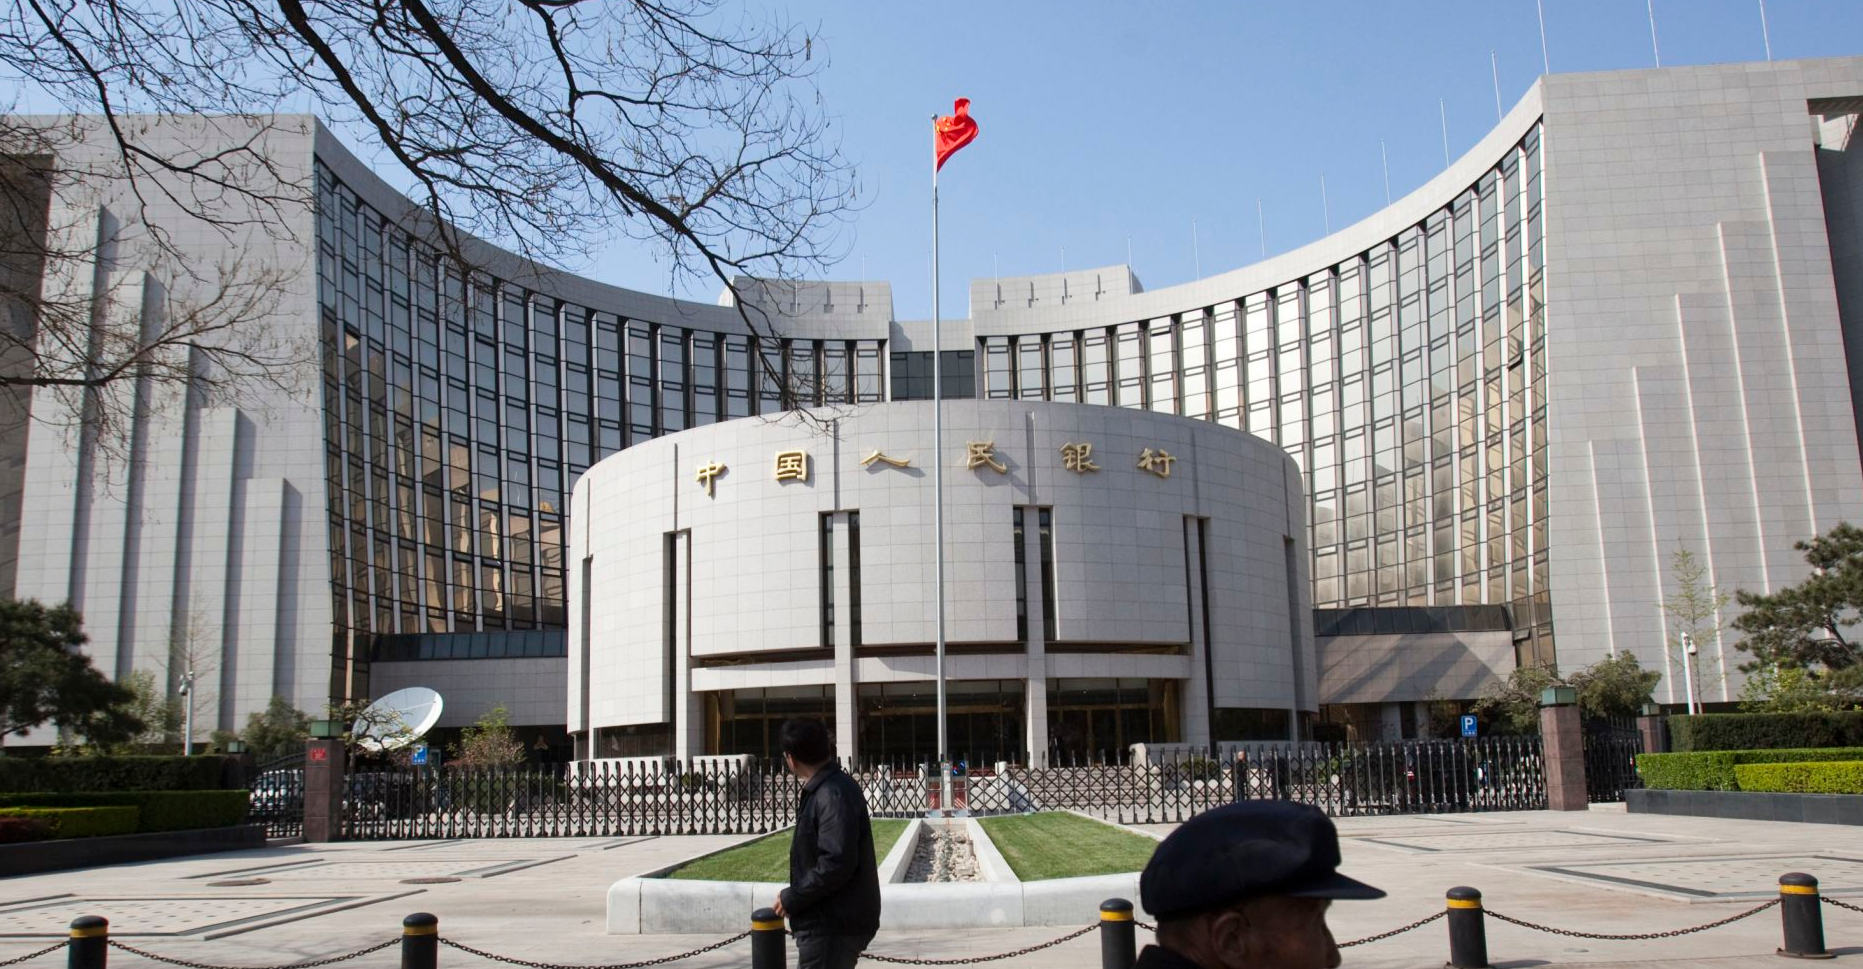 中国人民银行旧址图片